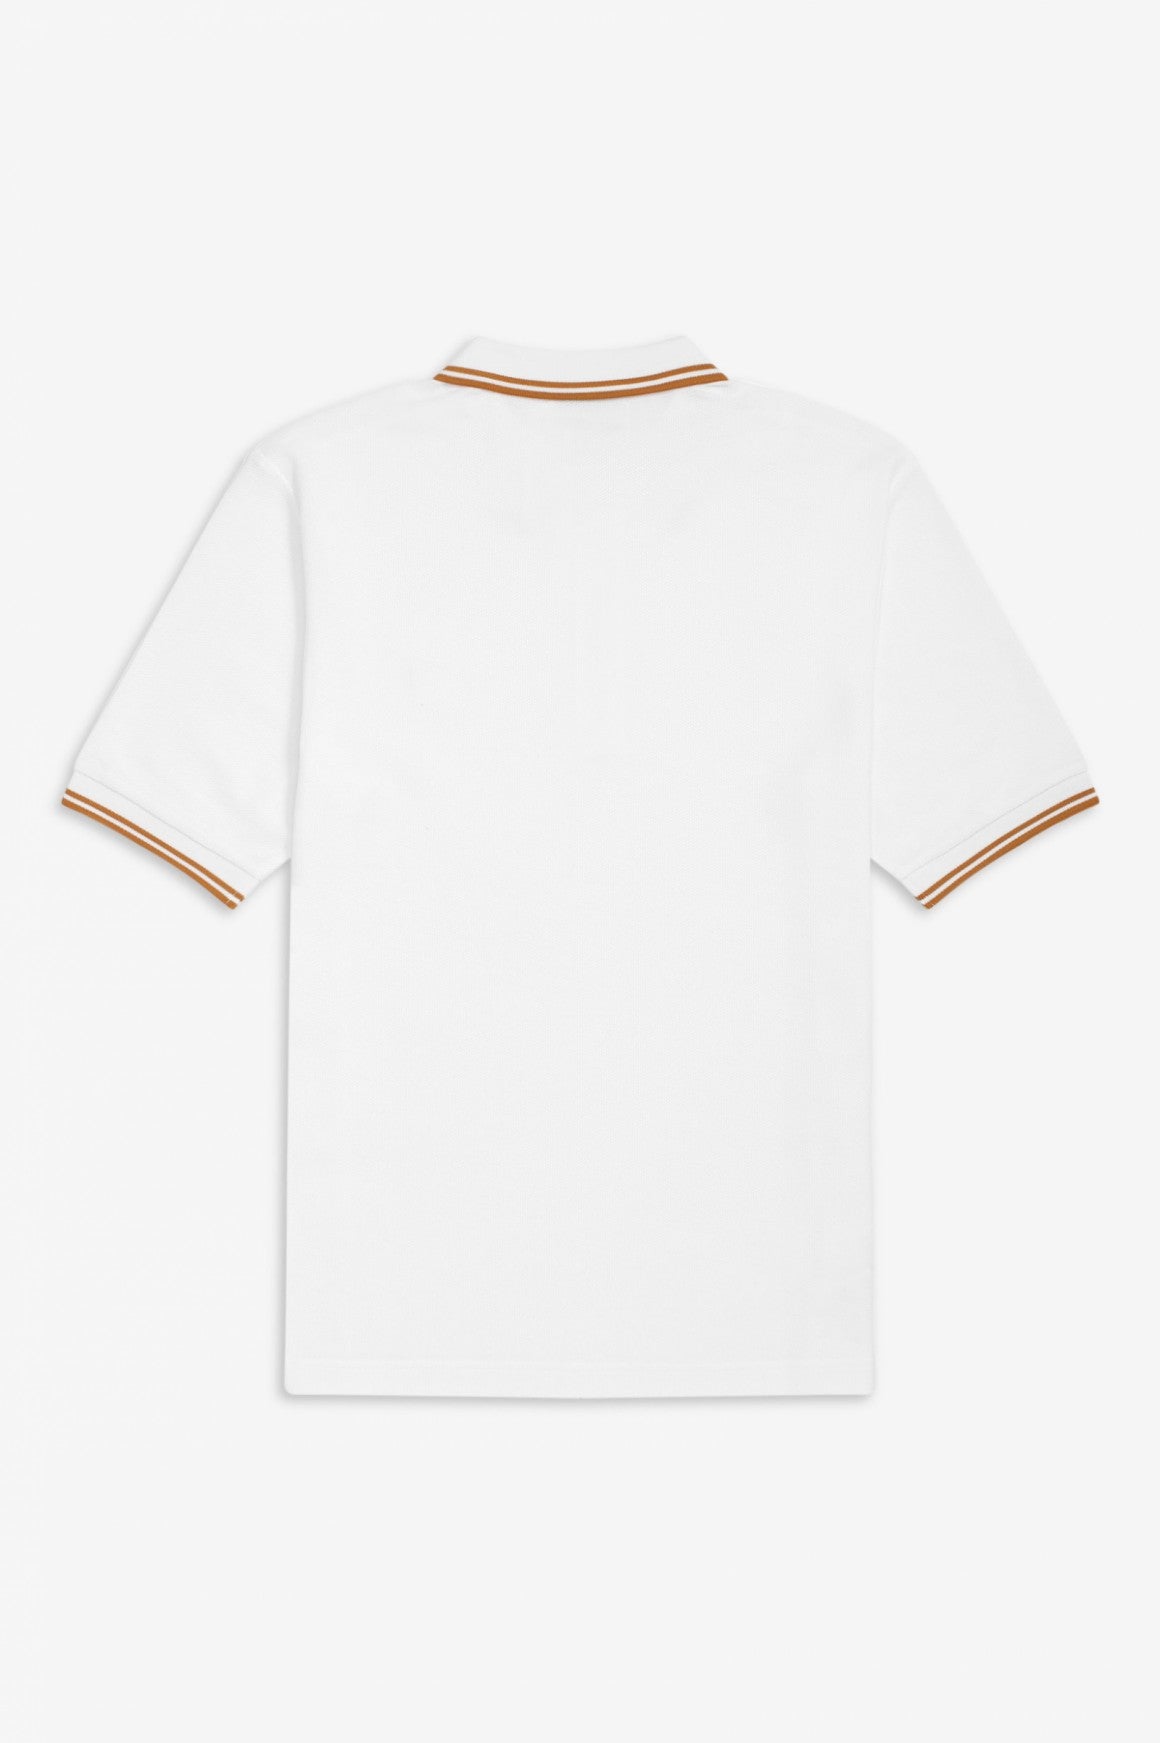 Miles Kane Zip-Neck Pique Shirt